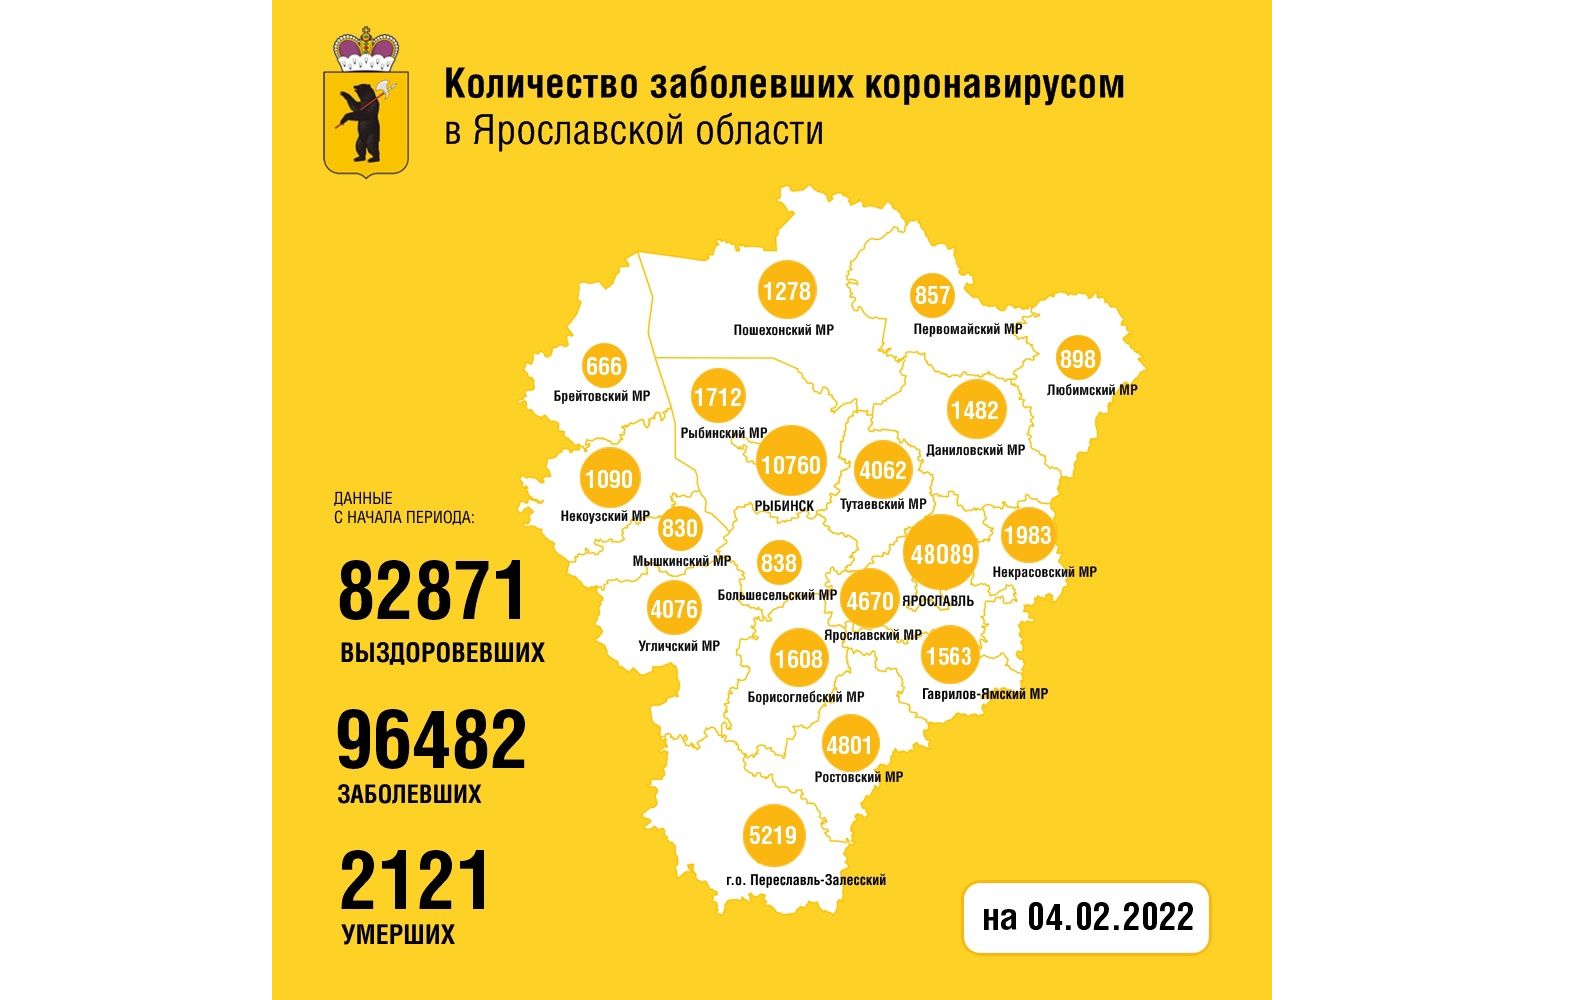 В Ярославской области побит очередной рекорд по заболеваемости коронавирусом: 864 новых случая за сутки